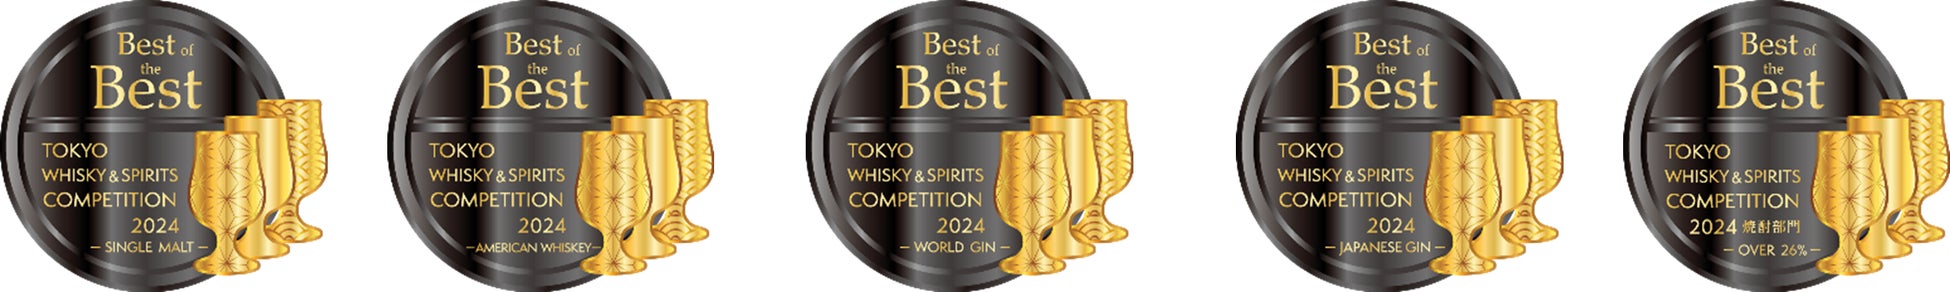 東京ウイスキー&スピリッツコンペティション（TWSC）2024